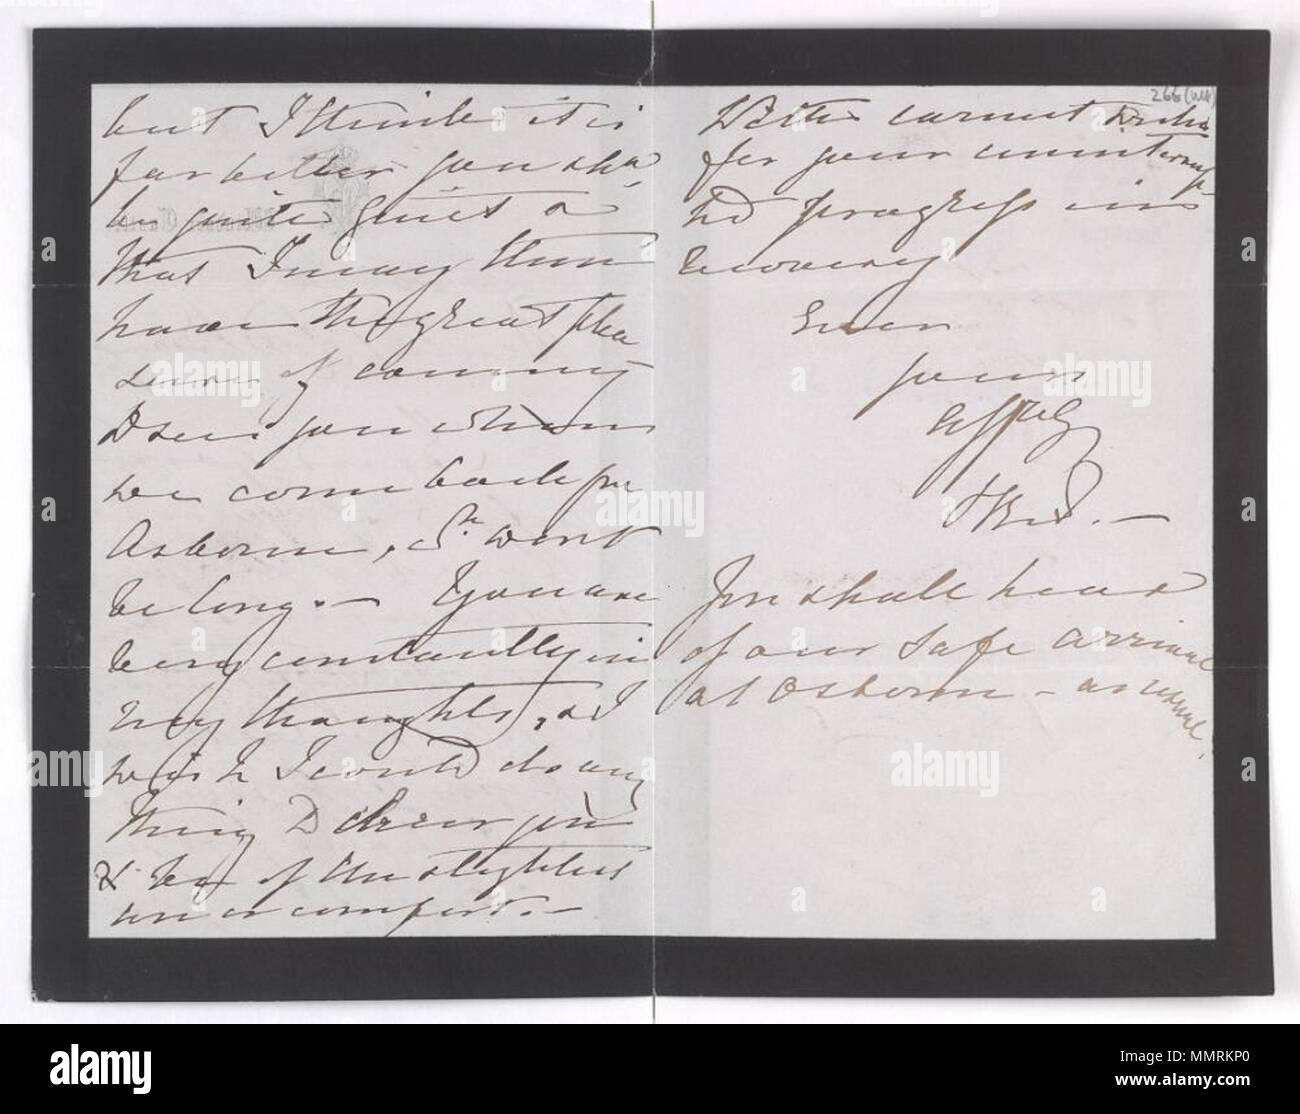 . Carta de la Reina Victoria, el 5 de abril de 1881.; como el autor de un bestseller desbocado Disraeli compró un contrato de arrendamiento de siete años en 19 Curzon Street, W1, en enero de 1881. Era la primera vez que había podido comprar una casa con su propio dinero. Curzon Street fue escenario de sólo una parte de la cena, el 10 de marzo de 2002, de los cuales 17 los visitantes fueron invitados. Disraeli su salud ya estaba fallando. El viento del este cortada en él como él hizo su camino de vuelta a casa el 22 de marzo. El chill desarrollado en la bronquitis y la espiral de declive comenzó. La casa pronto presenció una procesión de visitantes interesados, incluyendo su viejo Foto de stock